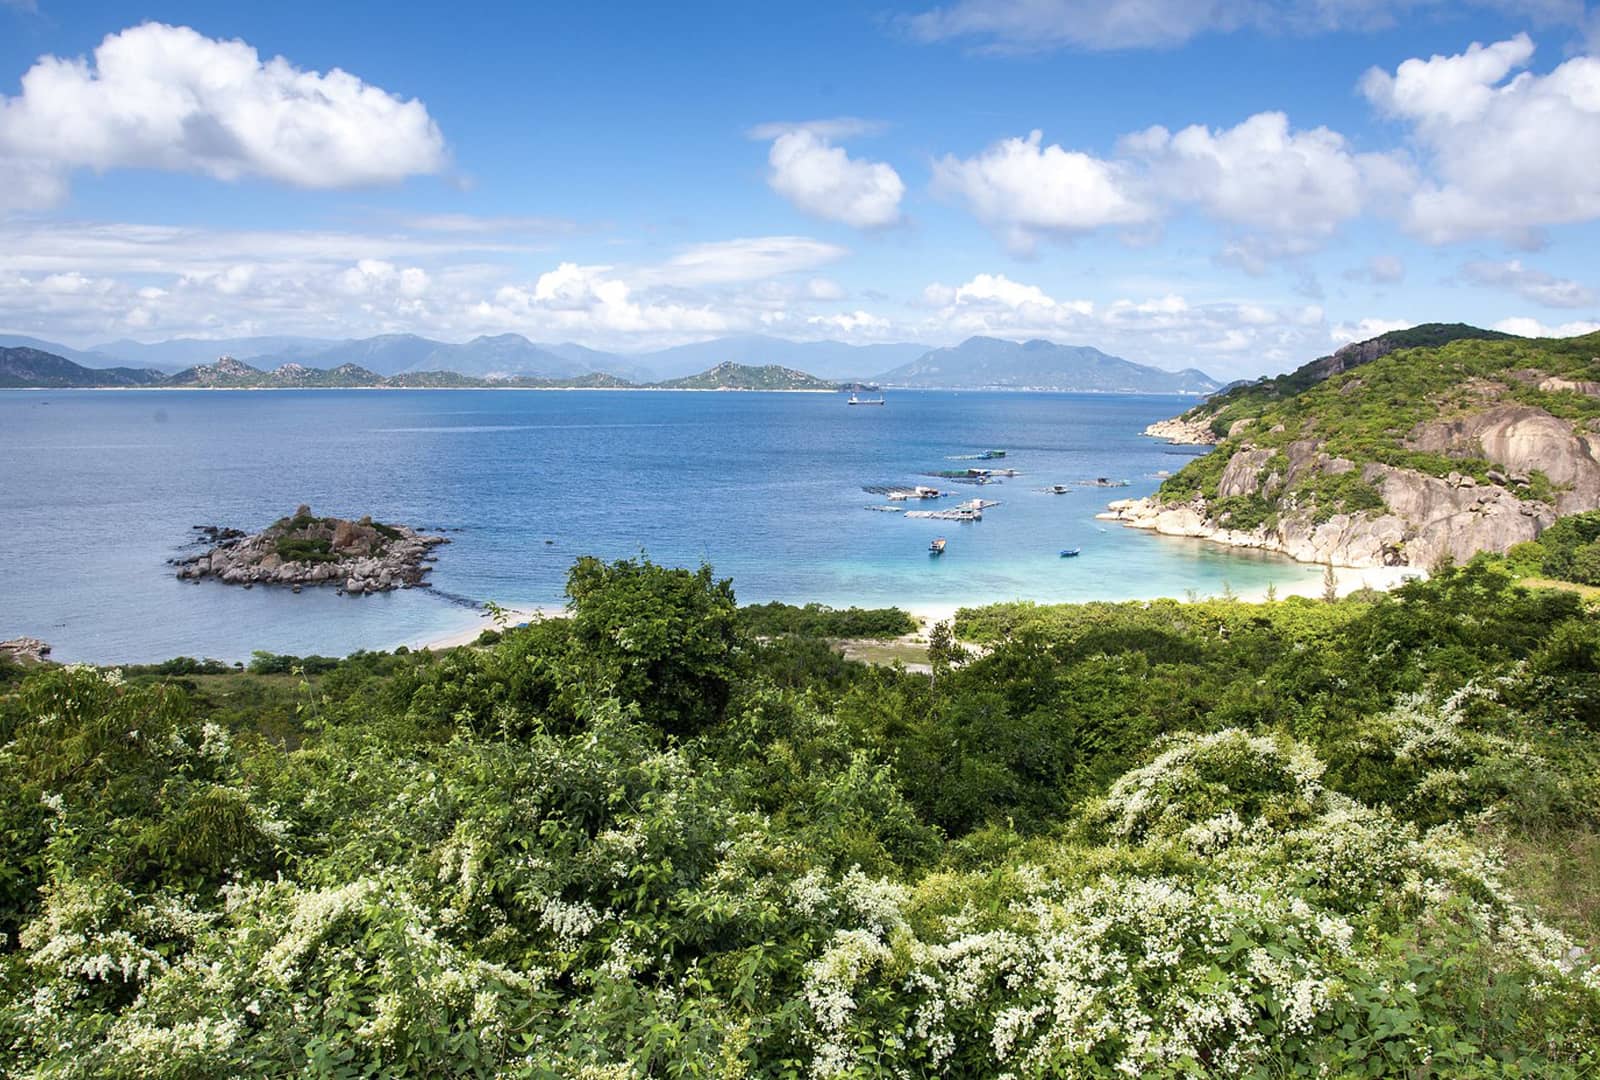 Bình Ba island - Vẻ đẹp nguyên sơ ở Khánh Hòa